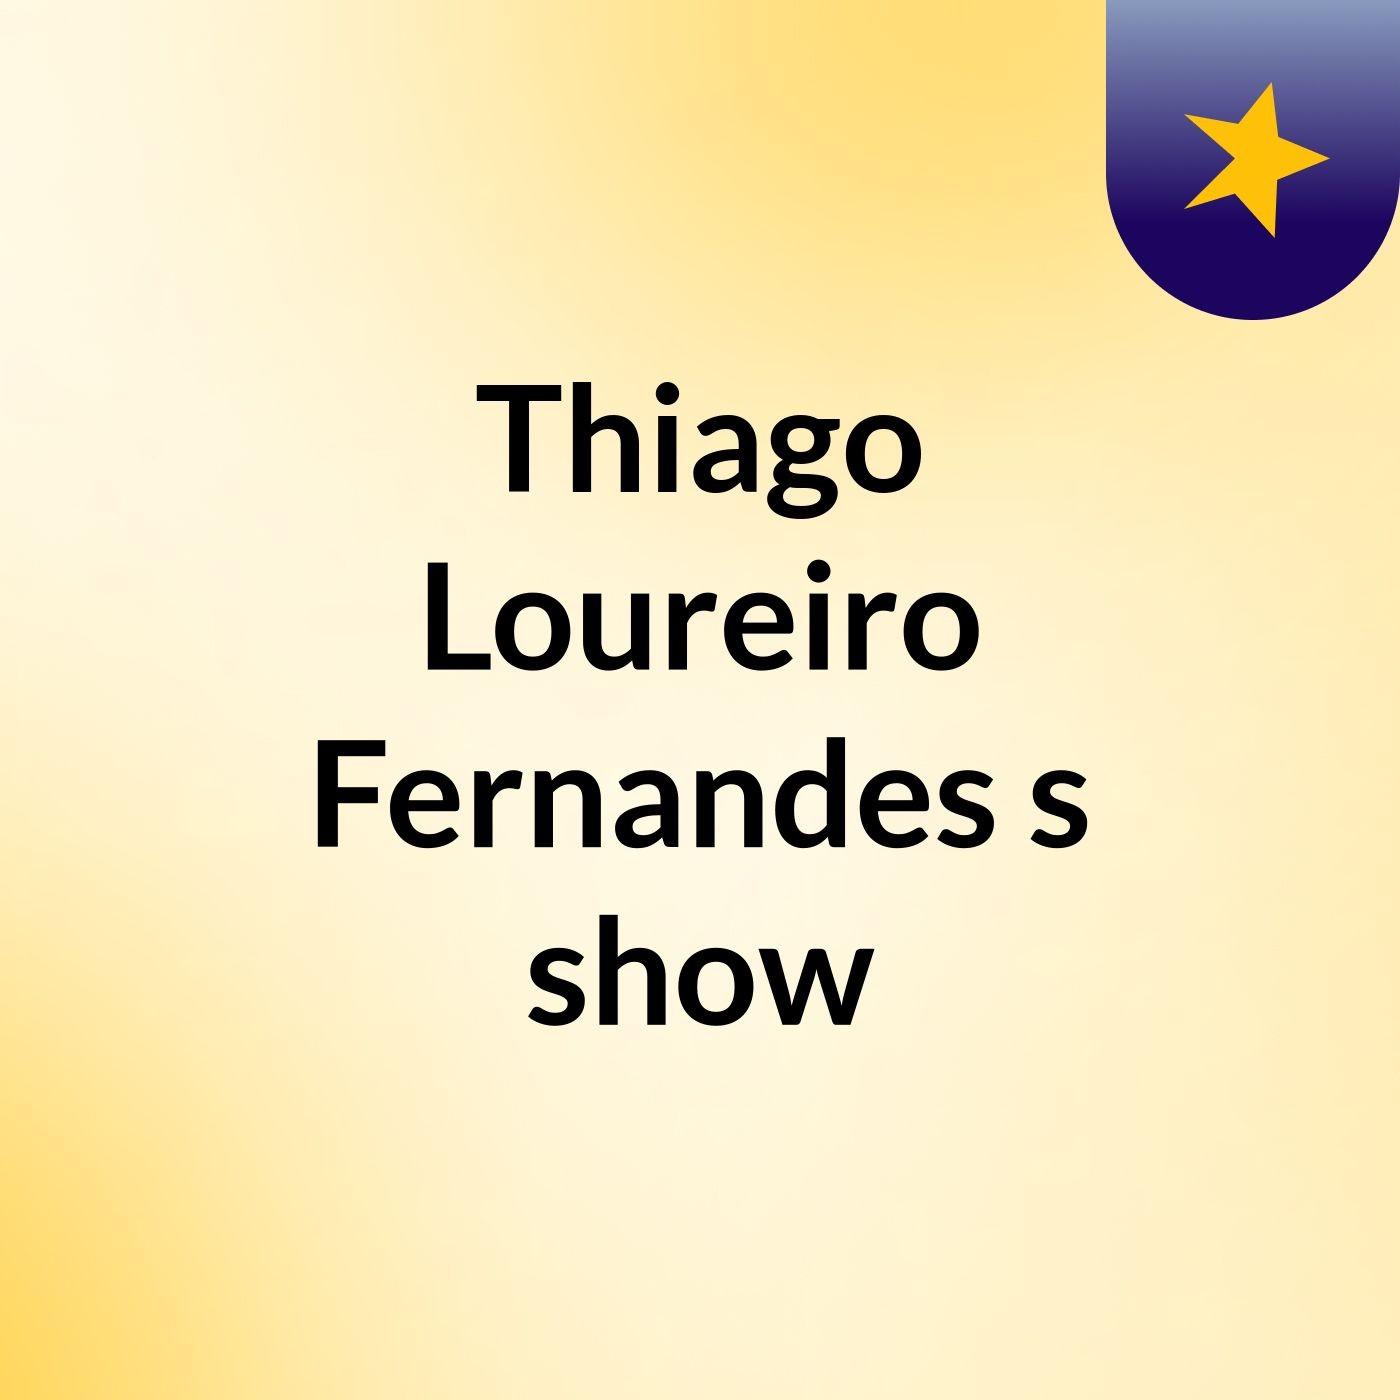 Thiago Loureiro Fernandes's show